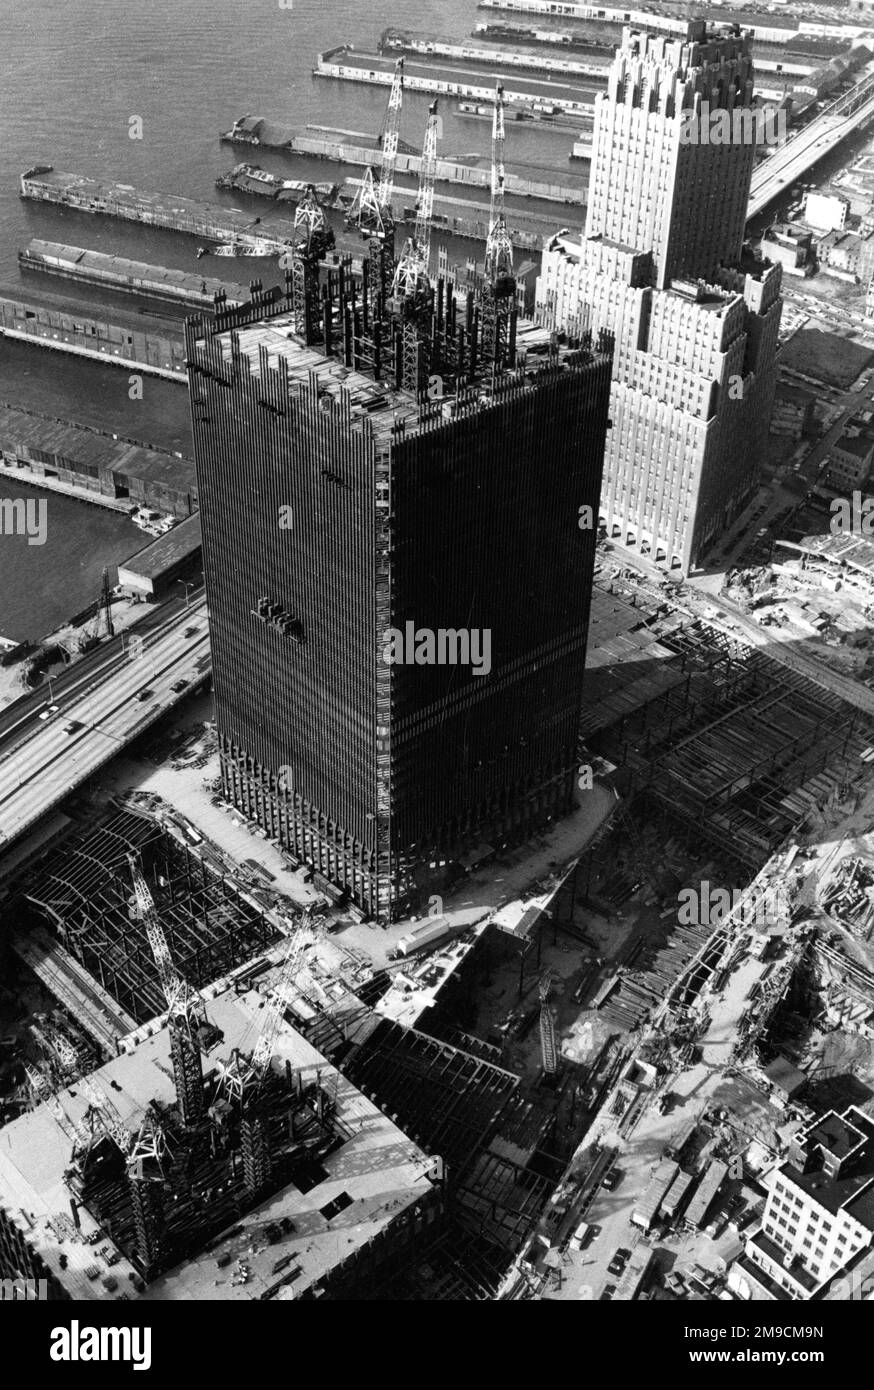 La construction de la première des tours jumelles du World Trade Center, qui a pris 7 ans à construire et a été détruite par des terroristes le 11 septembre 2001. Banque D'Images